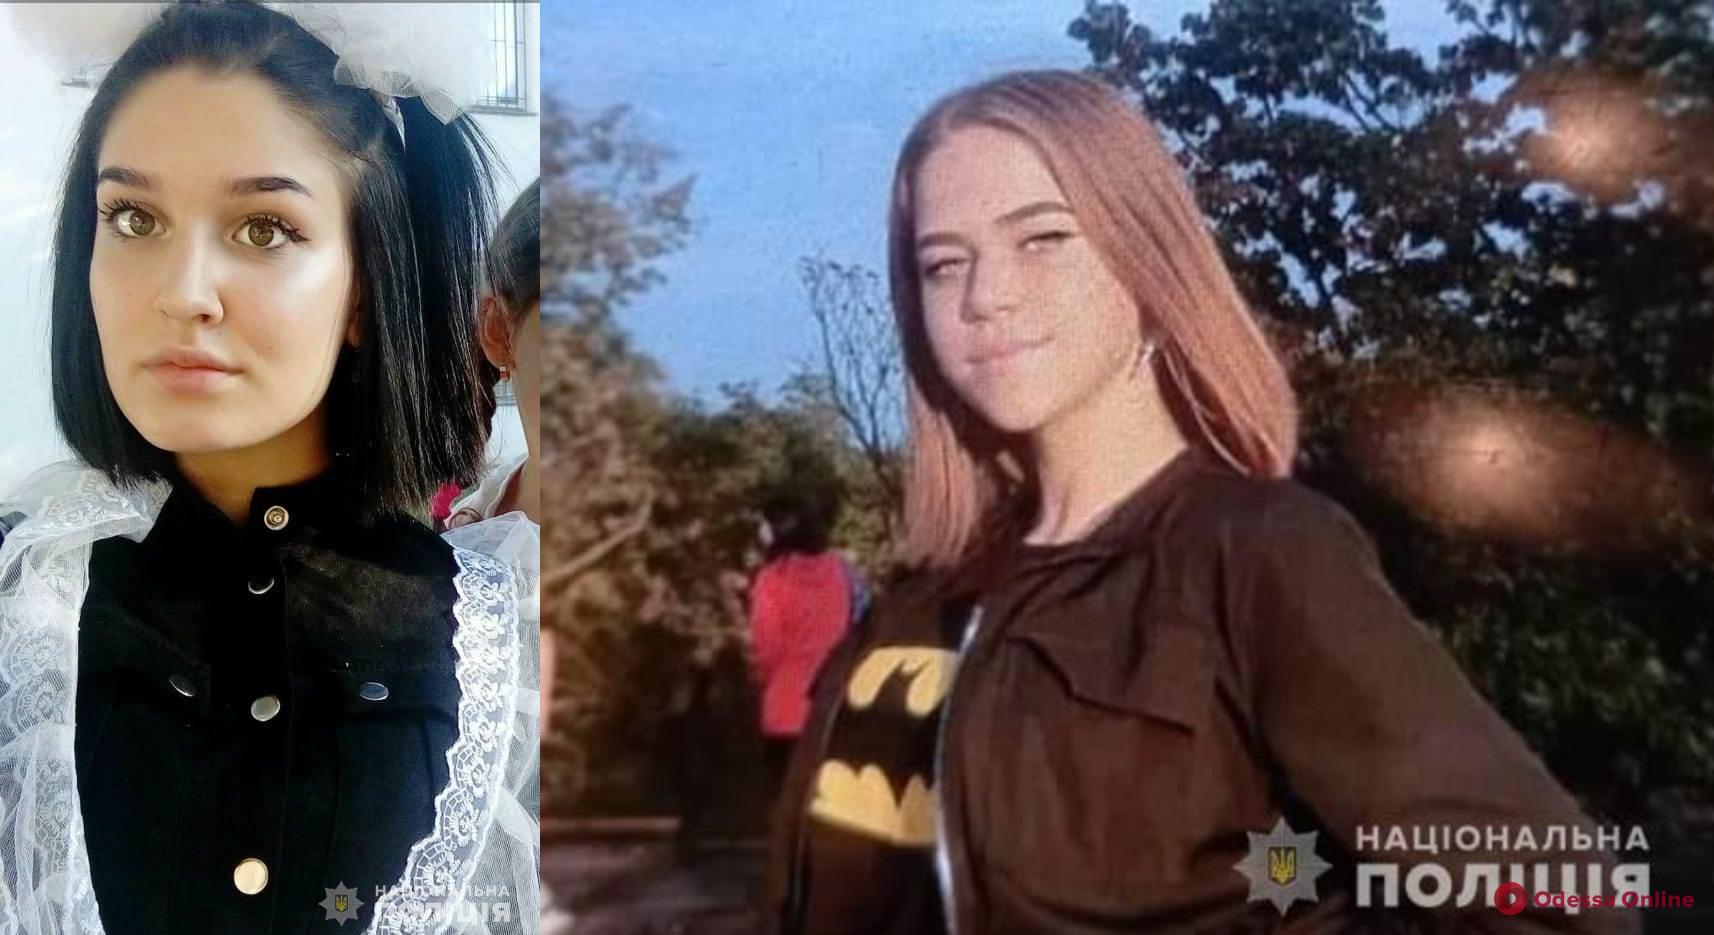 В Одессе нашли пропавших 15-летних девочек